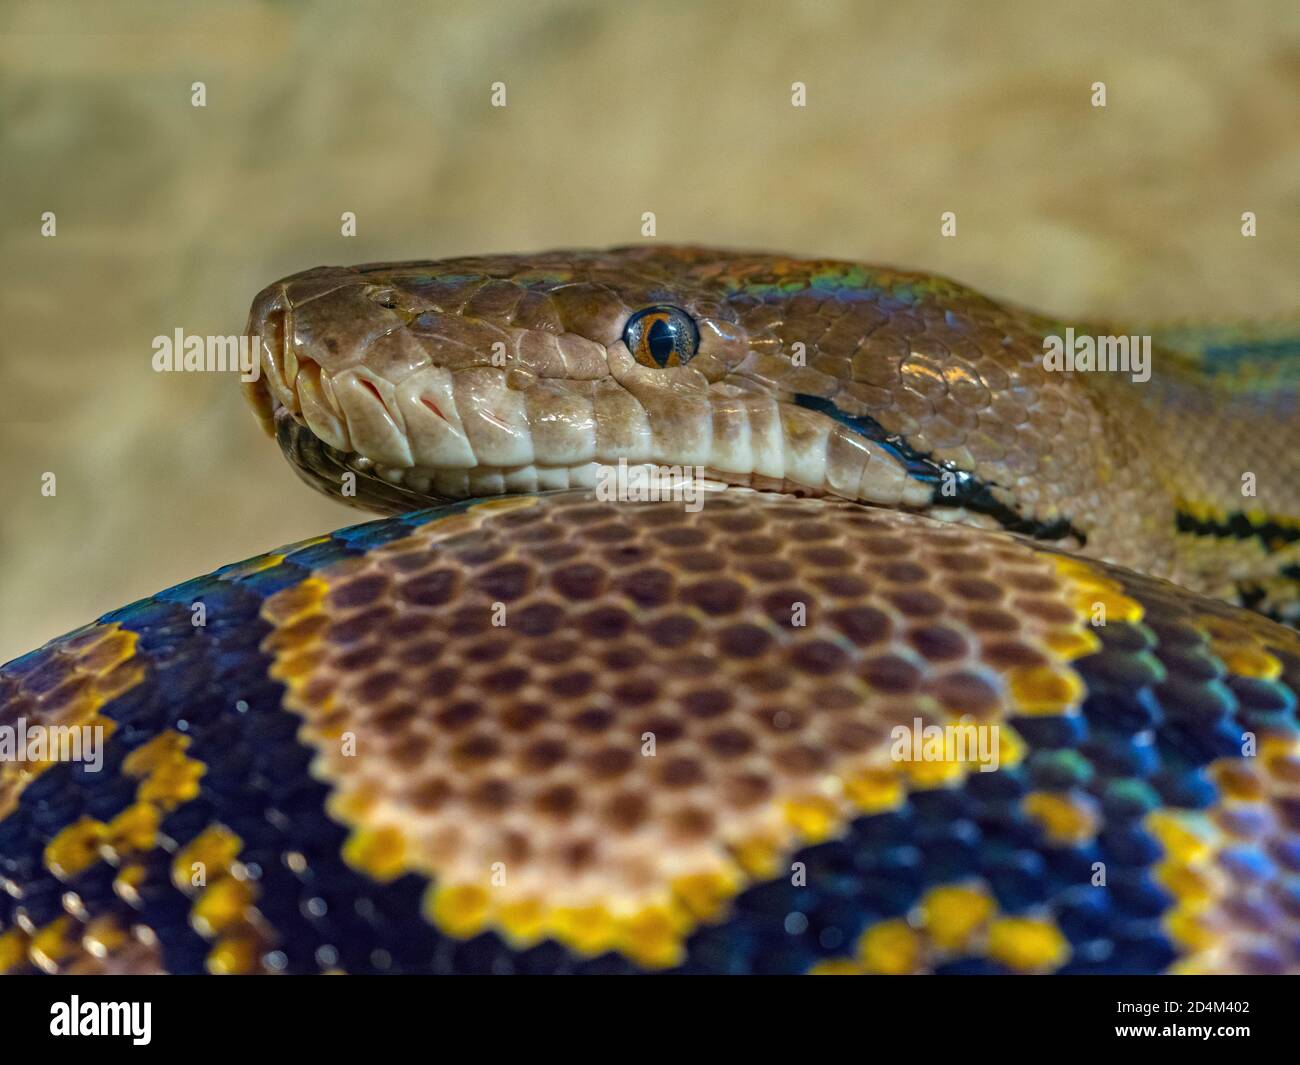 Netzpython Python reticulatus Nahaufnahme der Haut pattens Stockfoto